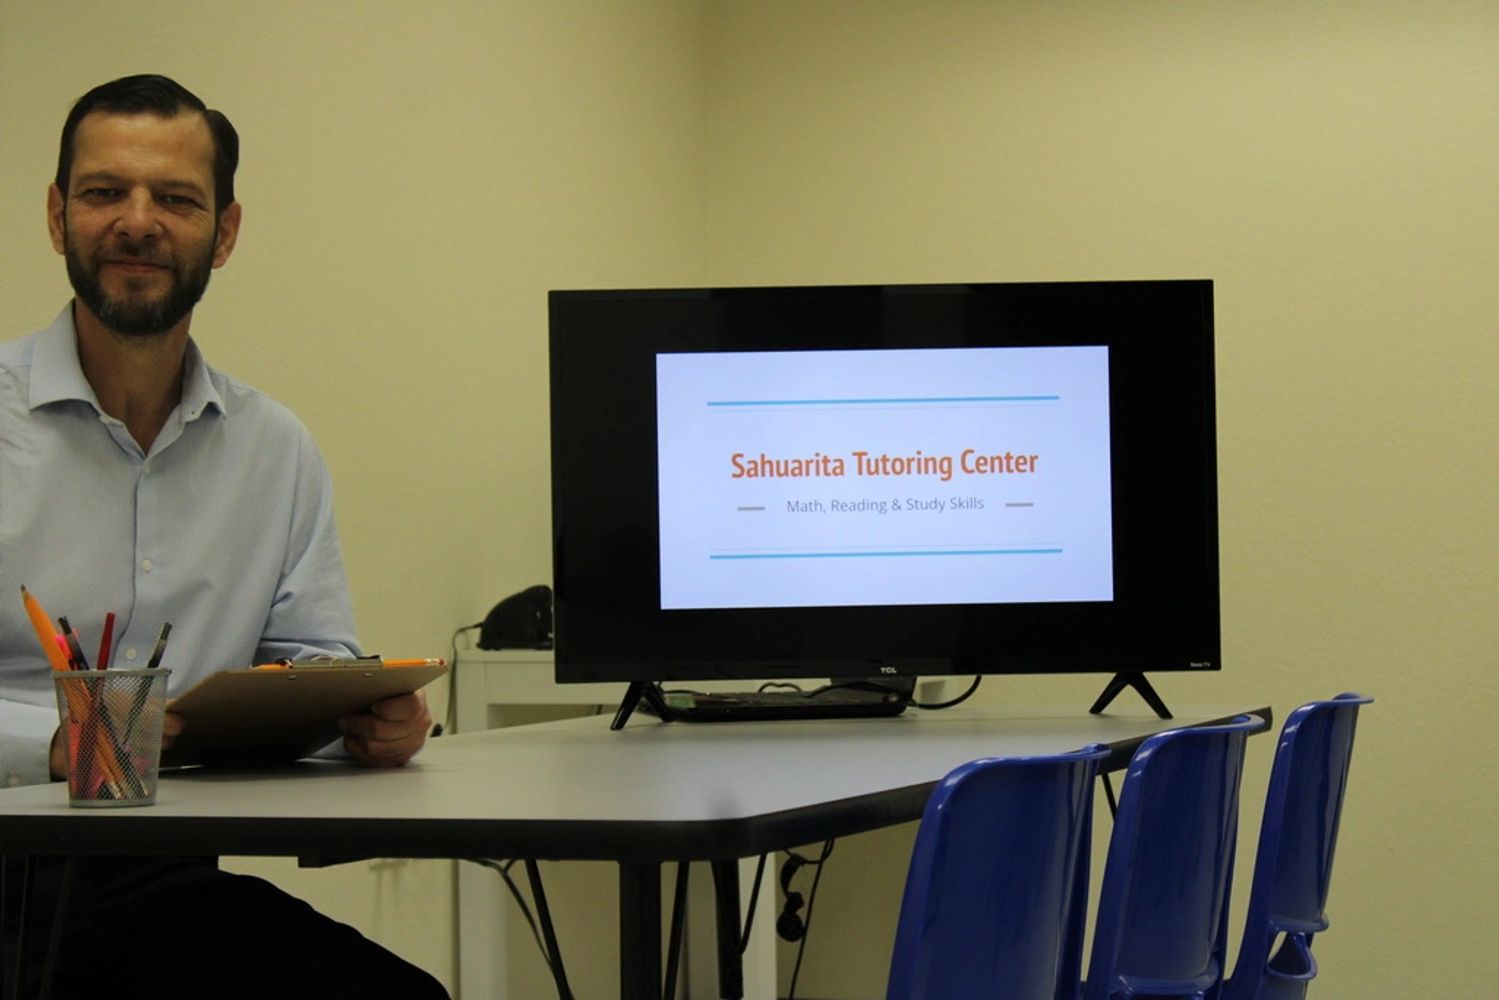 Tutor at Sahuarita Tutoring Center with monitor displaying math, reading and study skills.